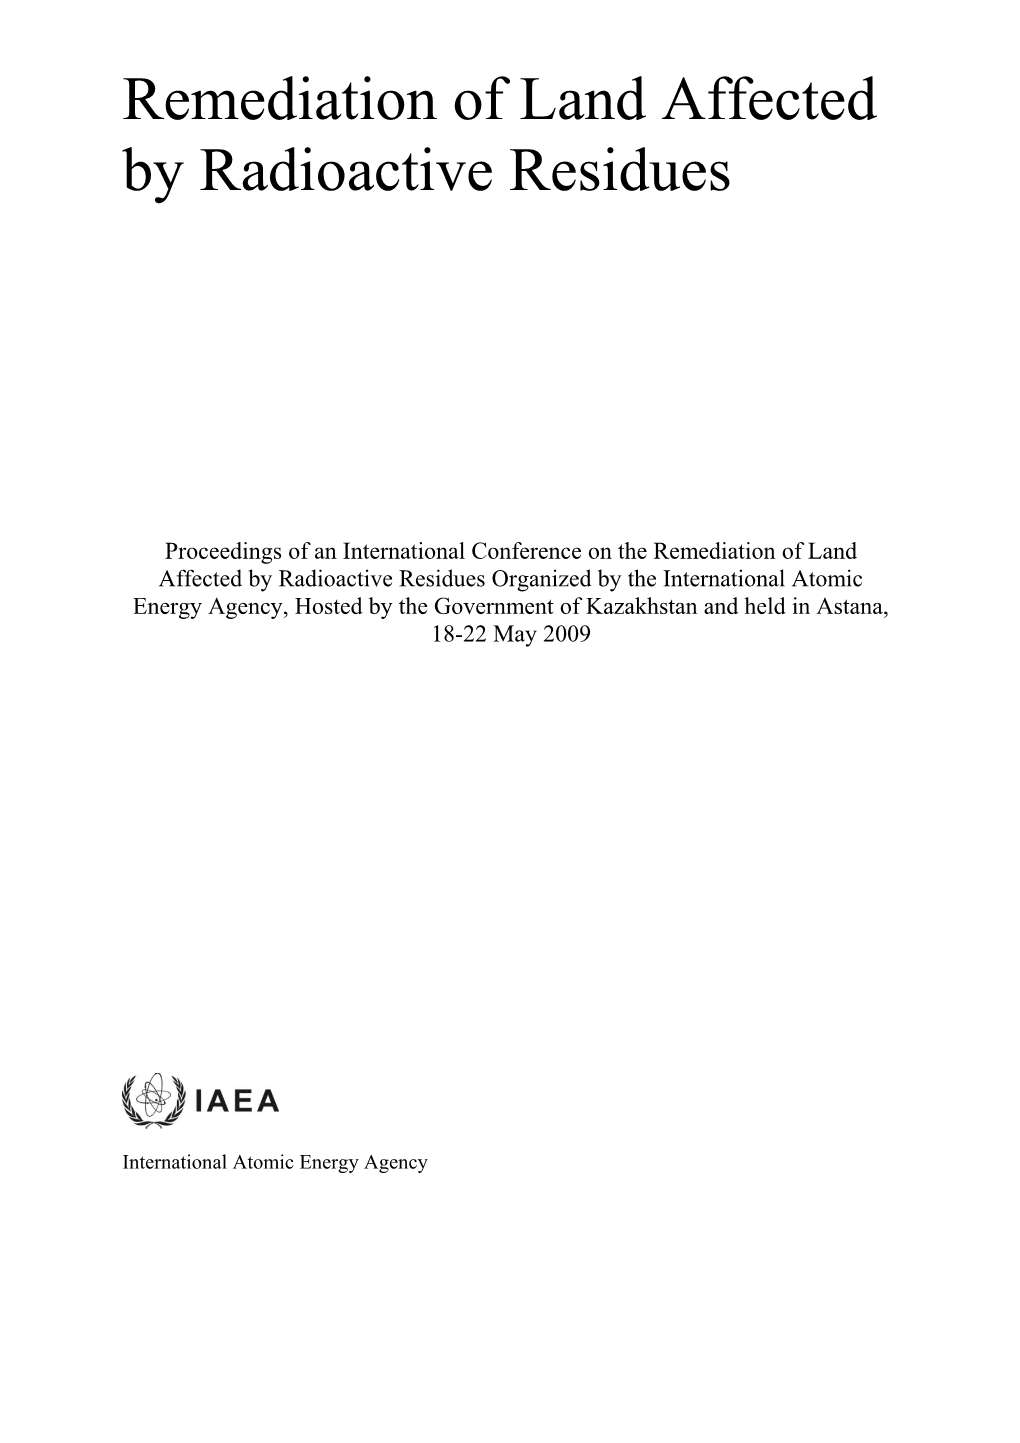 IAEA Report DOC